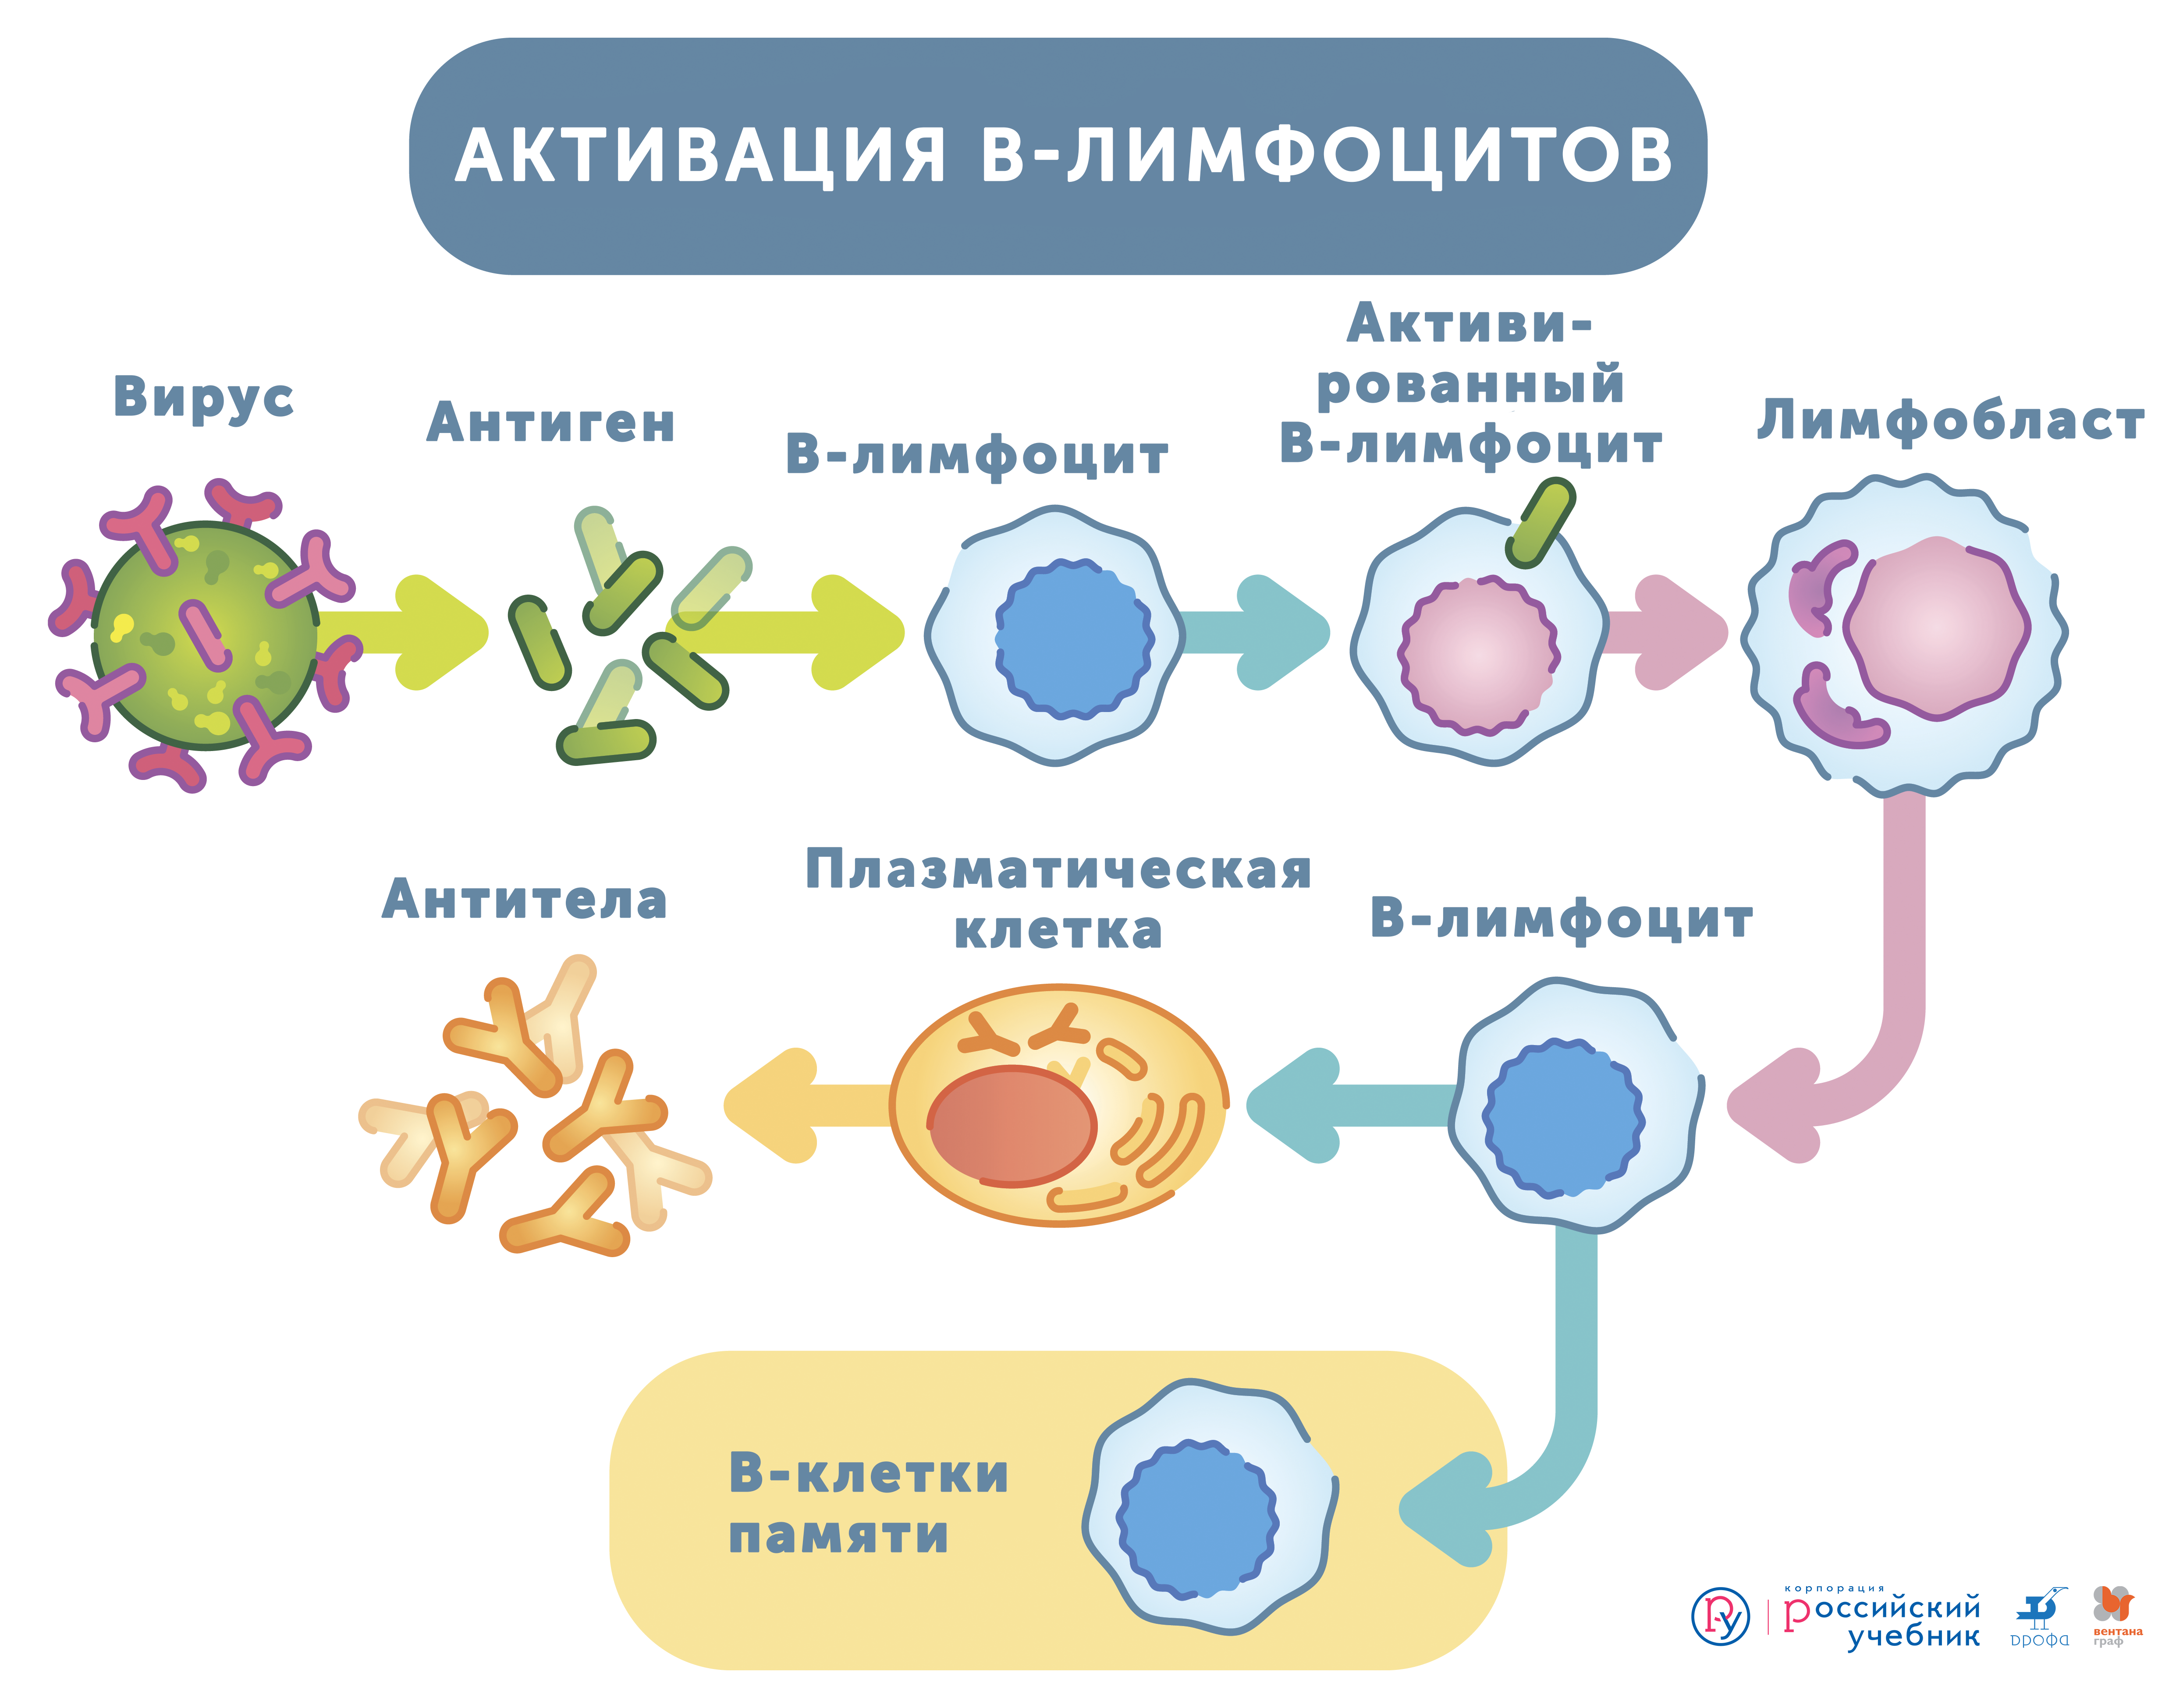 Т и б клетки. Т-лимфоциты иммунной системы схема. B-лимфоциты клетки памяти. Активация т лимфоцитов схема. Активация т лимфоцитов иммунология.